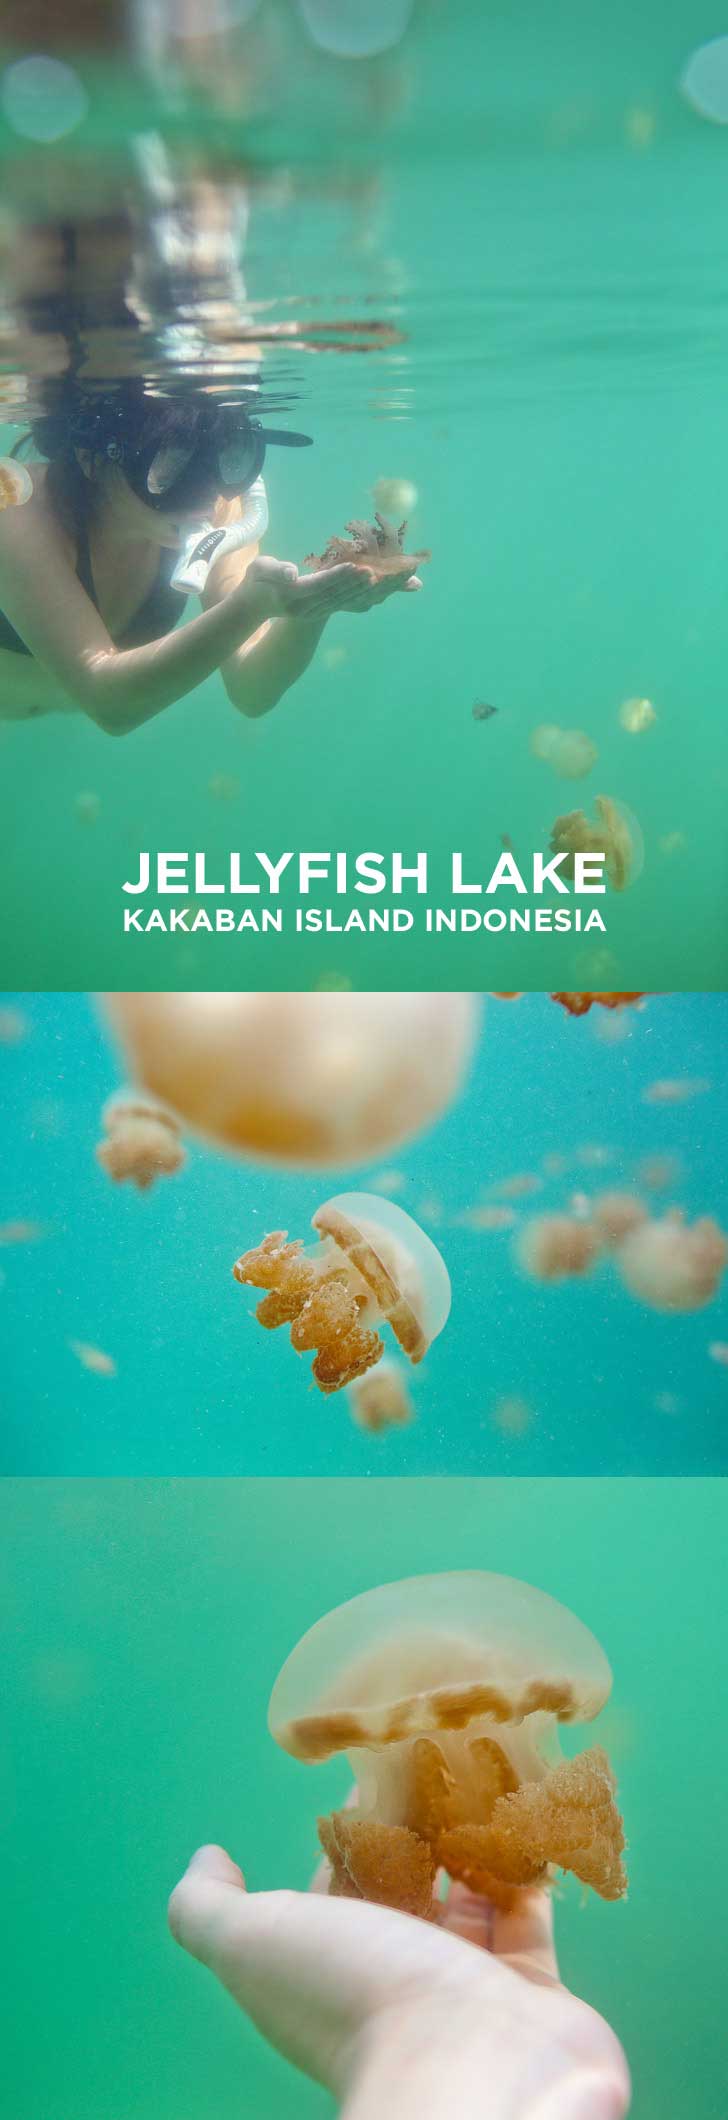 Swimming with Stingless Jellyfish at Jellyfish Lake Kakaban Island Indonesia // localadventurer.com